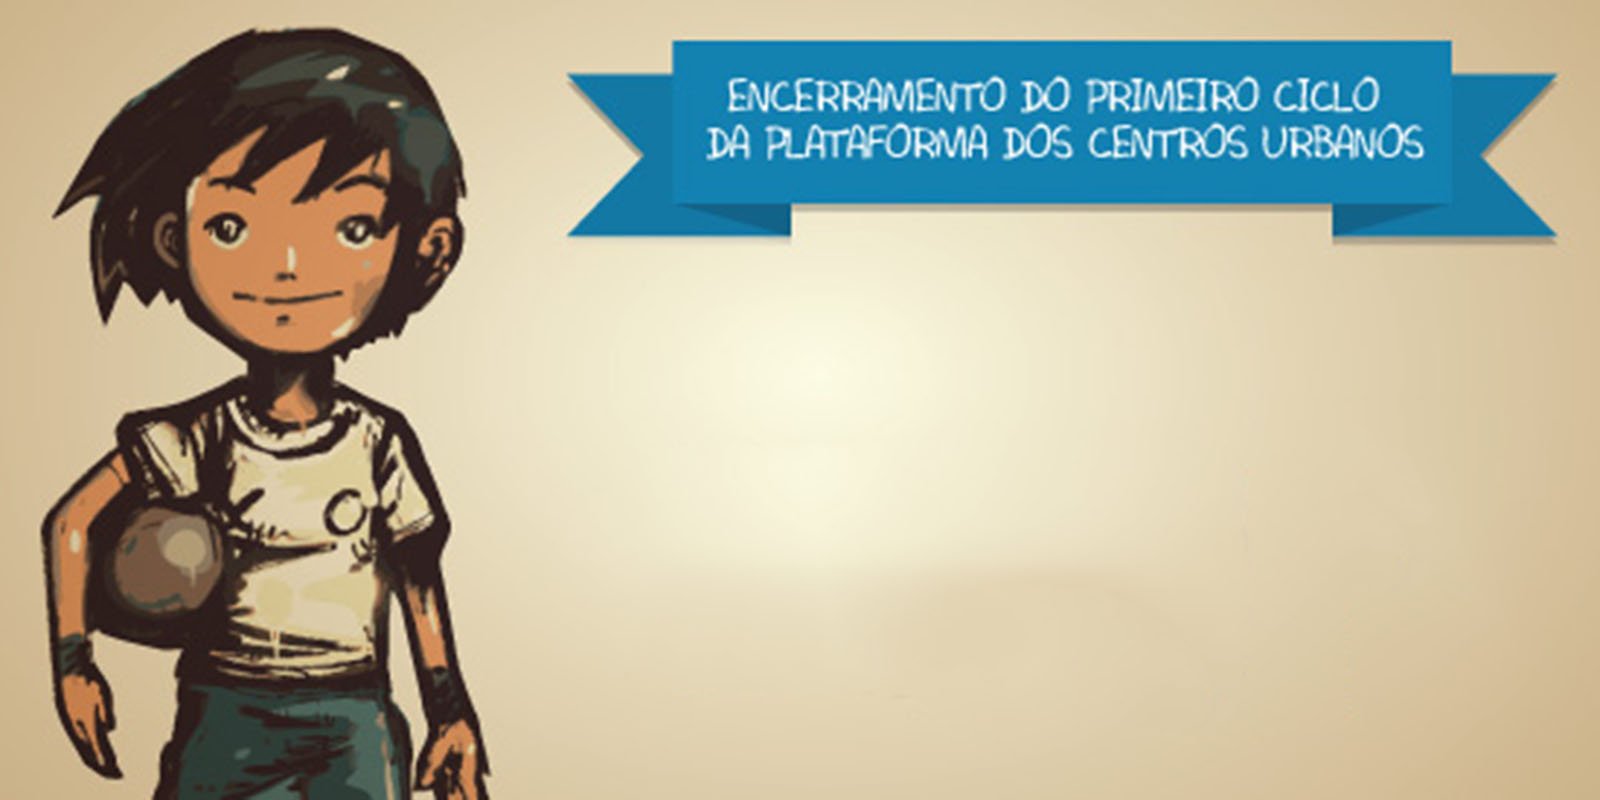 Featured image for “Plataforma dos Centros Urbanos”